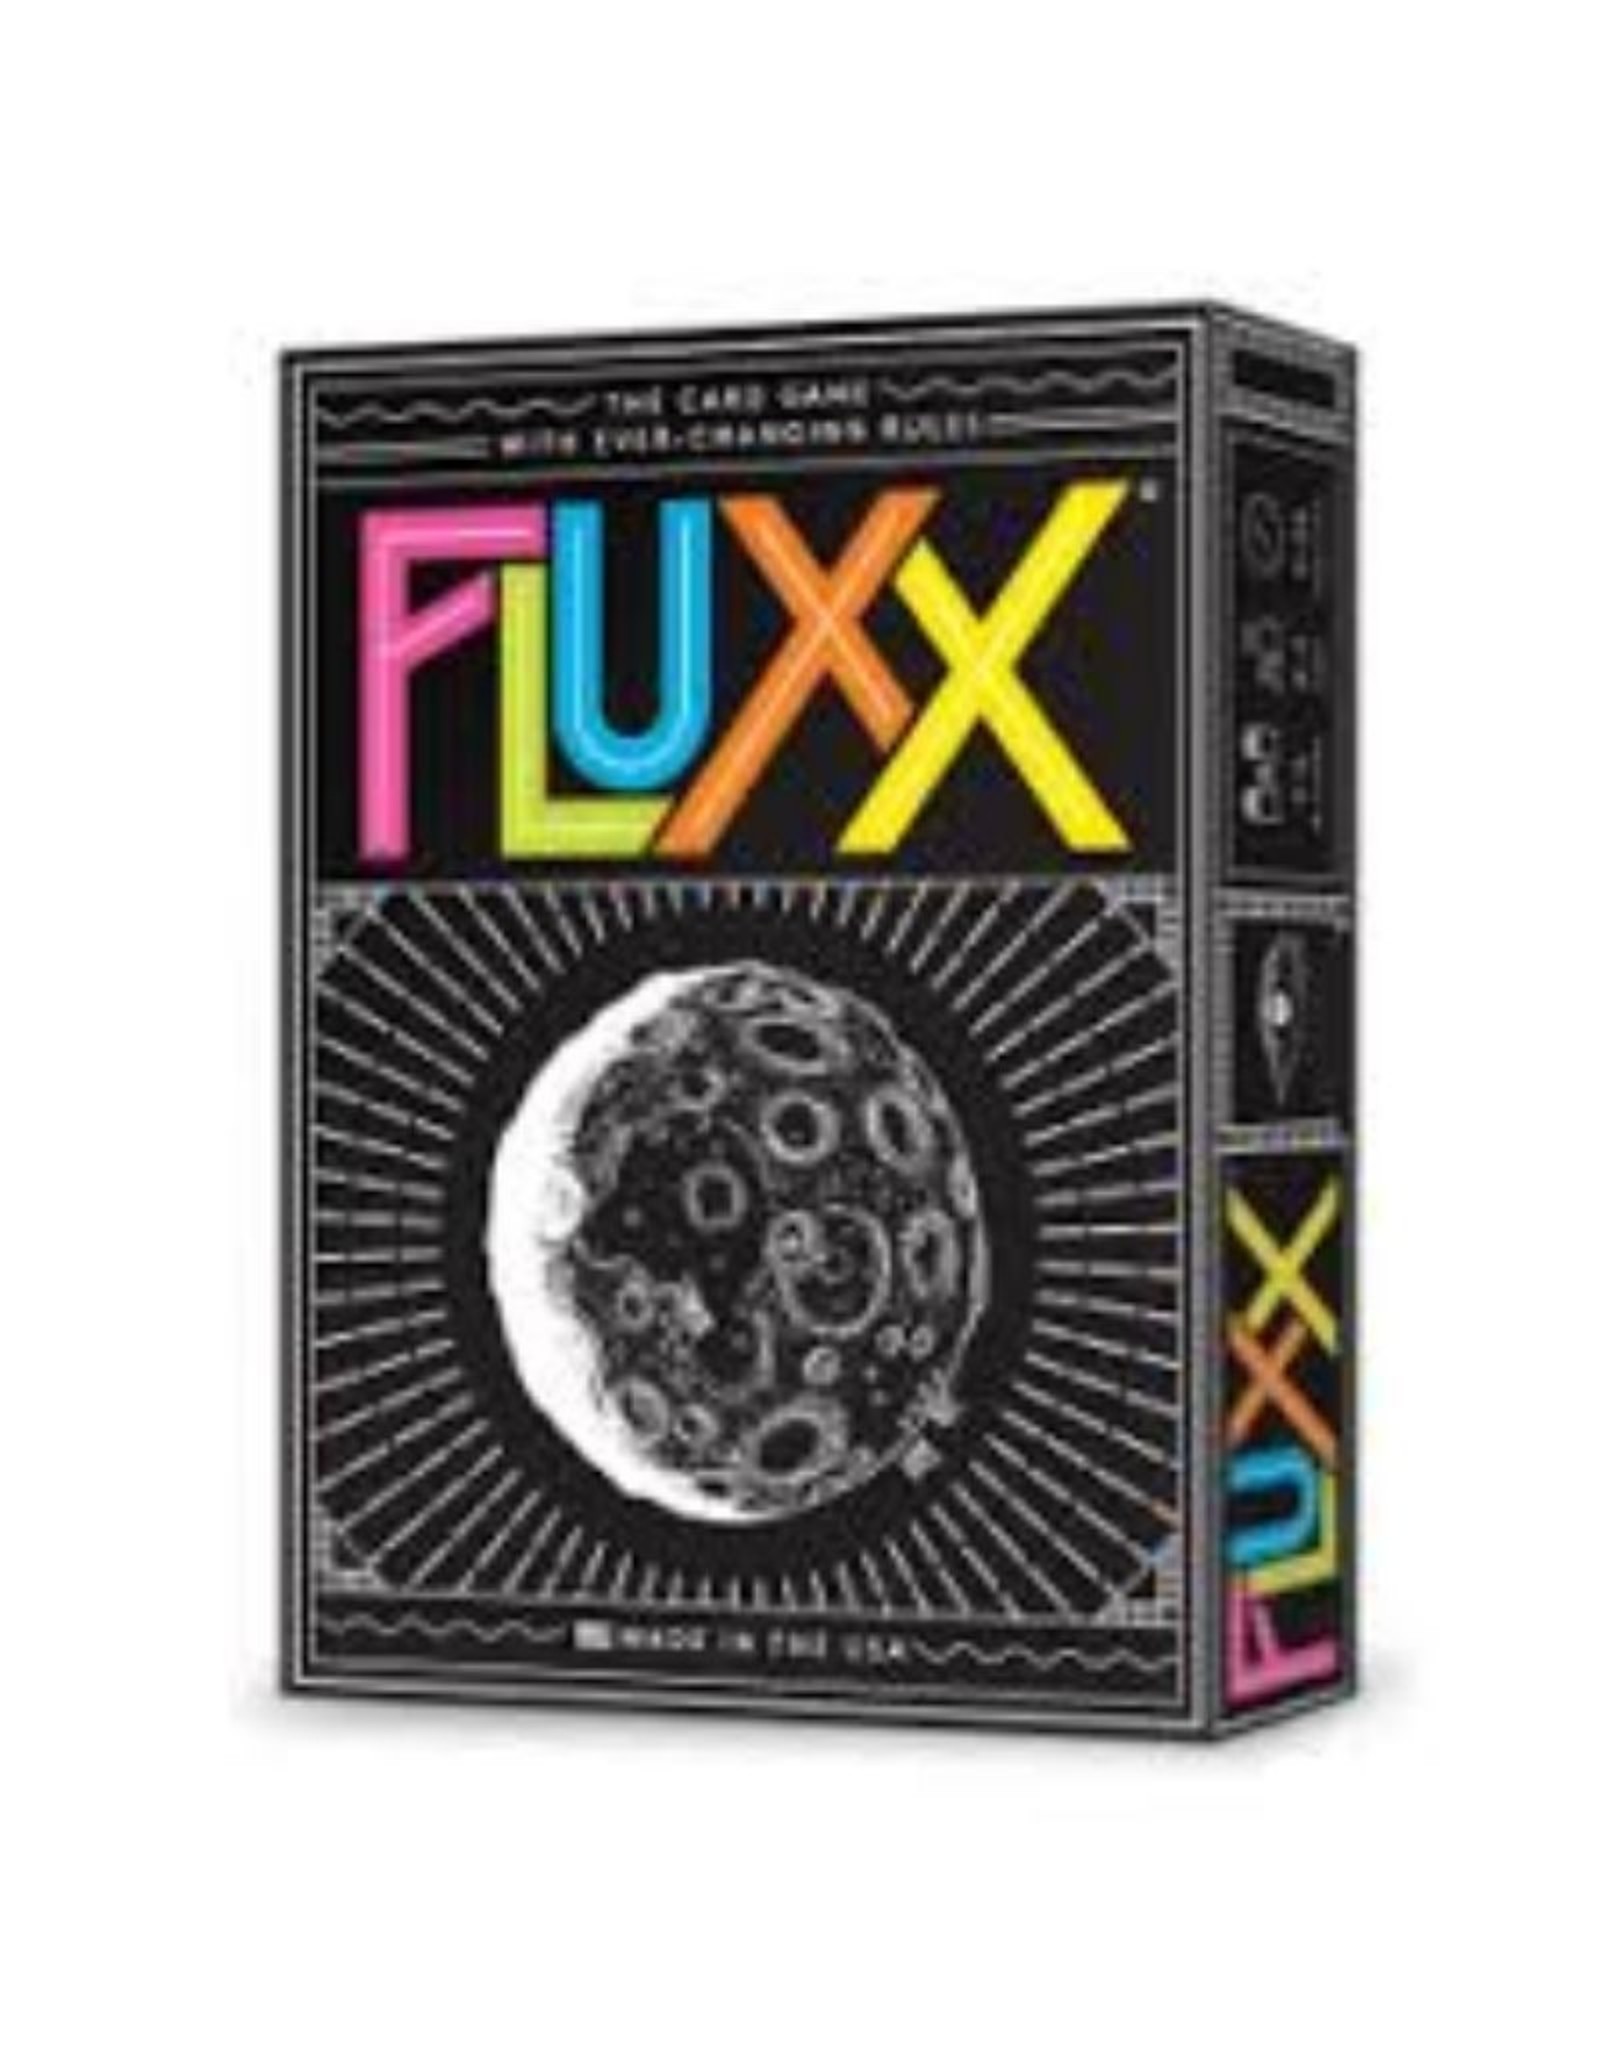 Fluxx v5.0